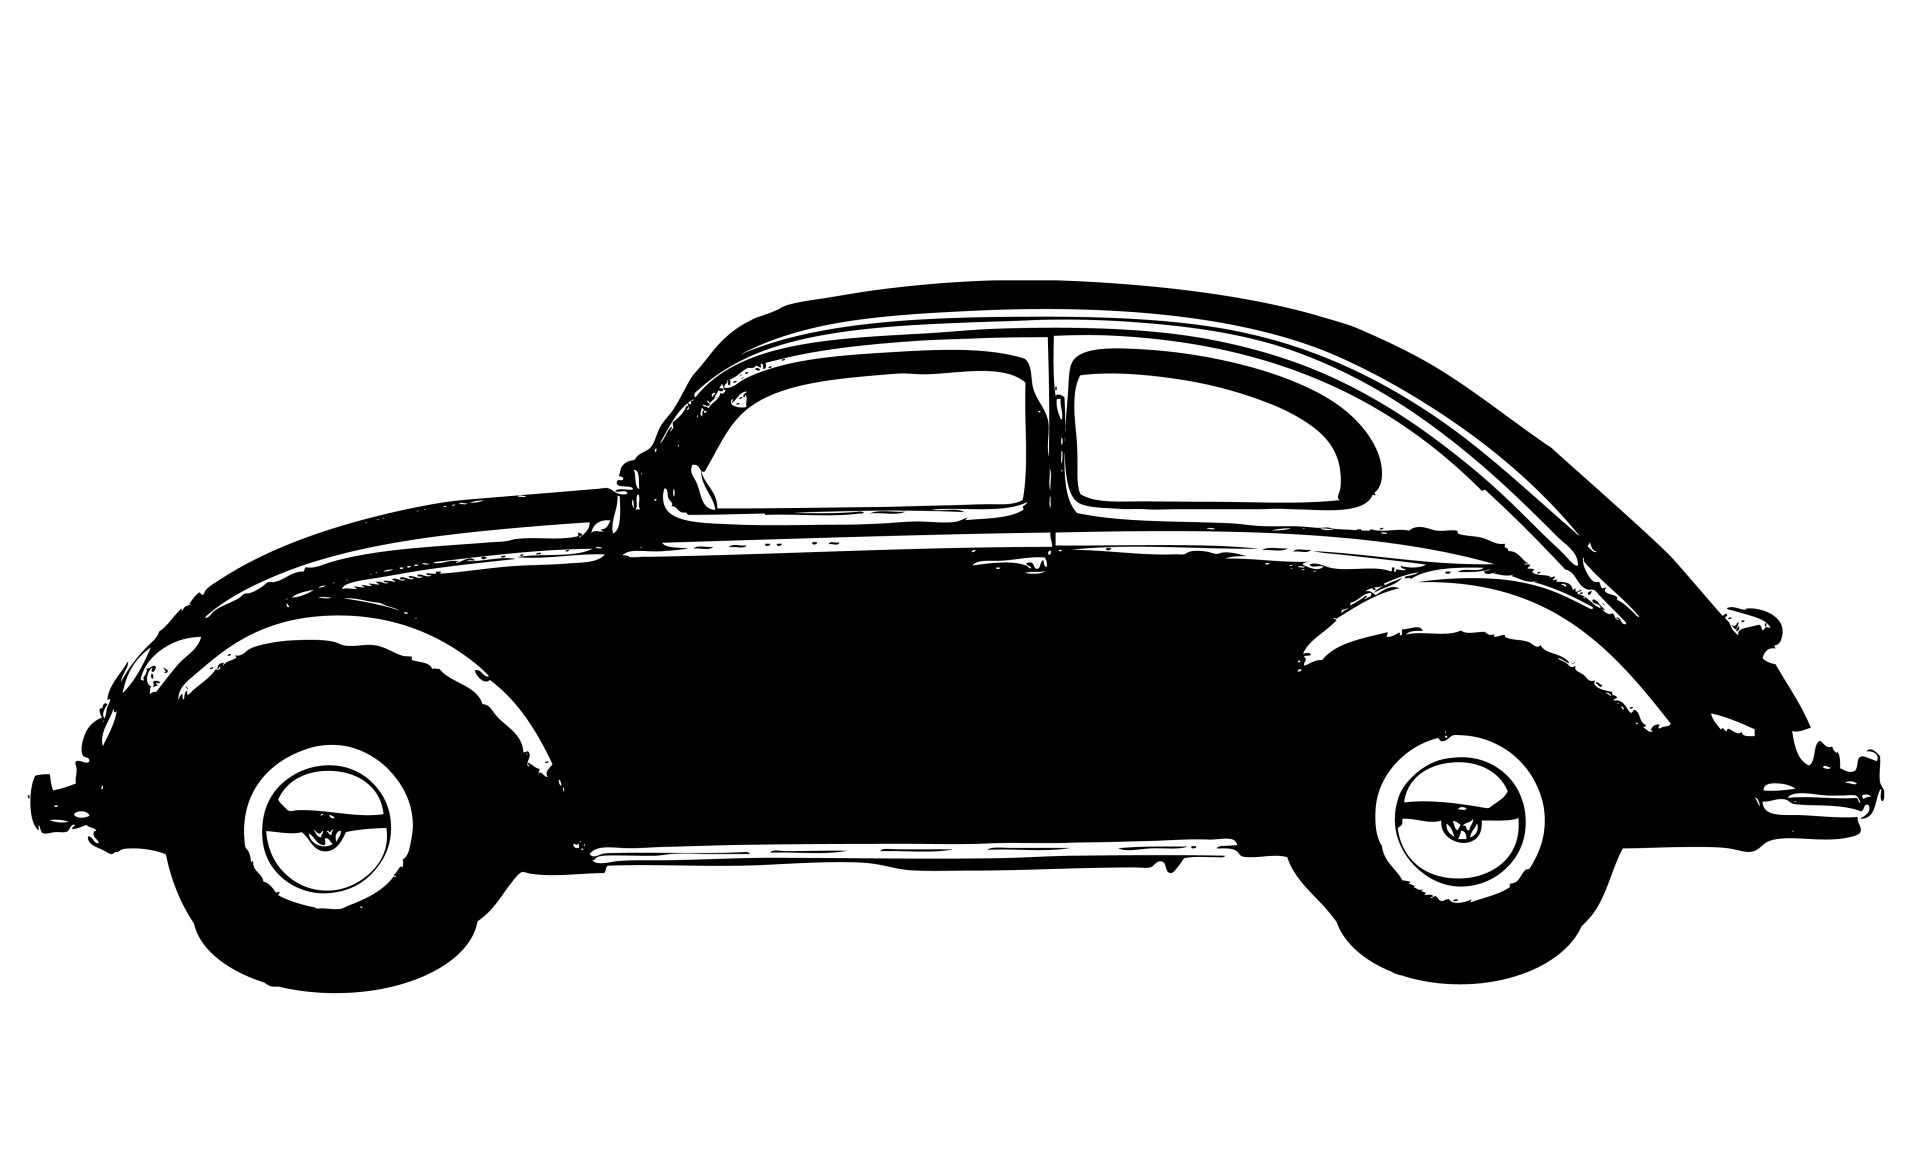 Vintage black volkswagen beetle car art on white background